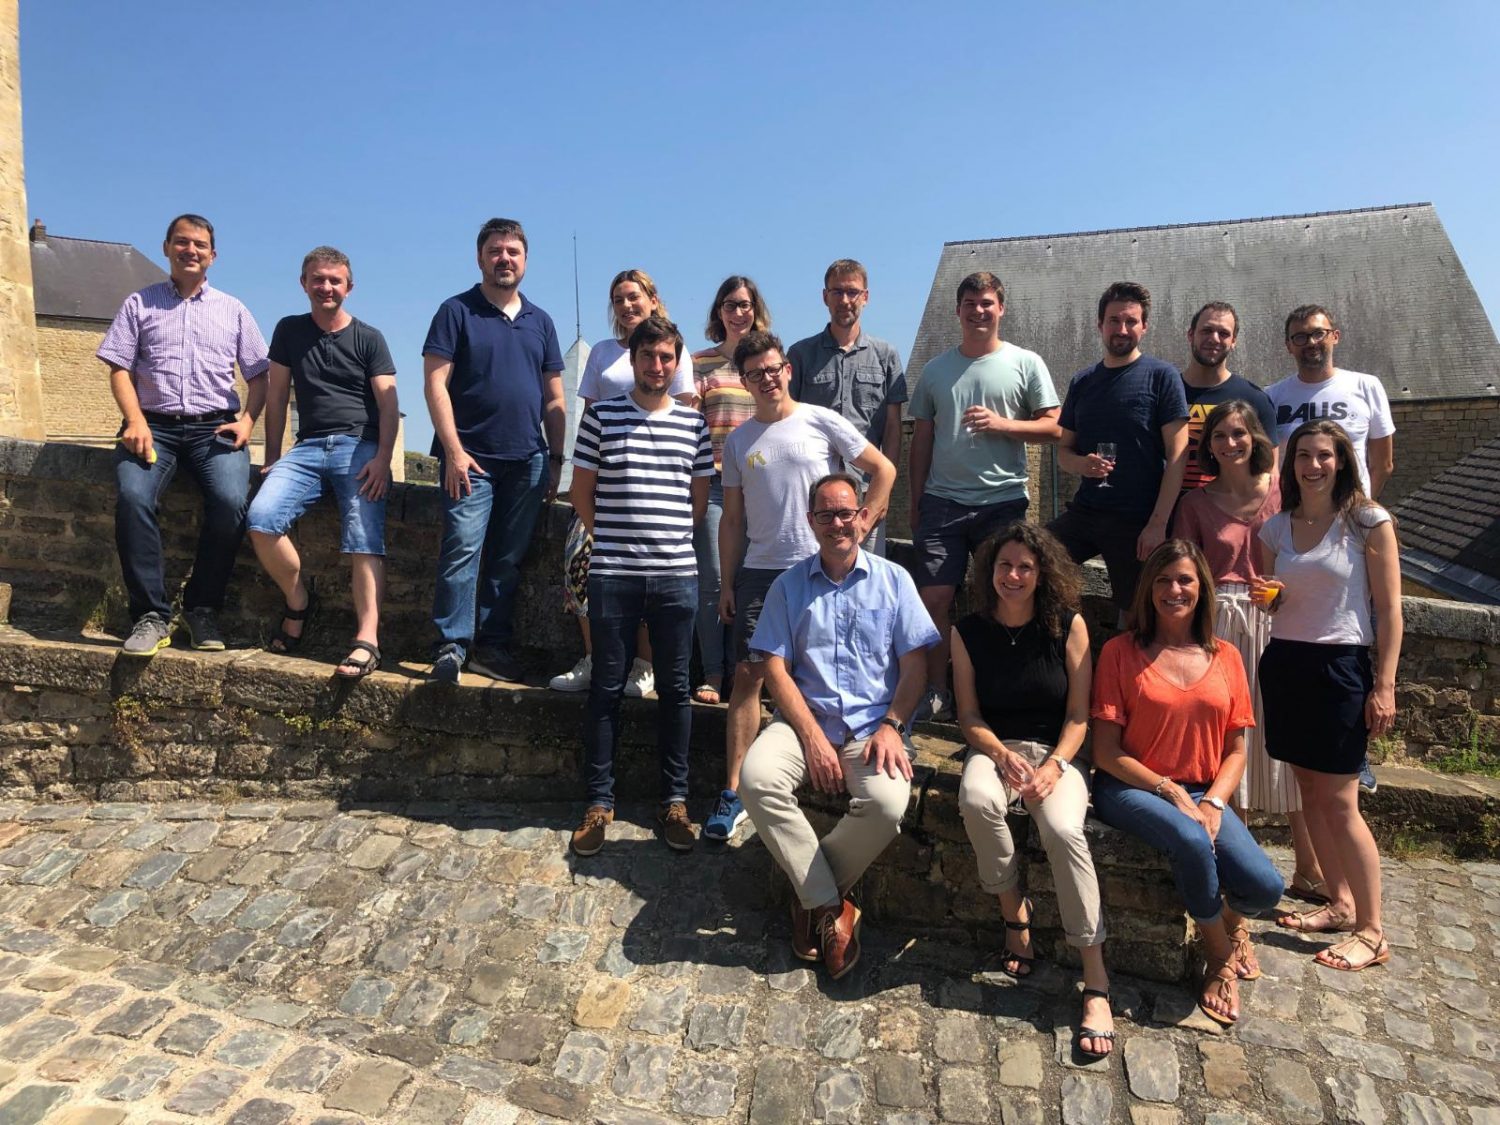 Adplorer Team Meeting in France